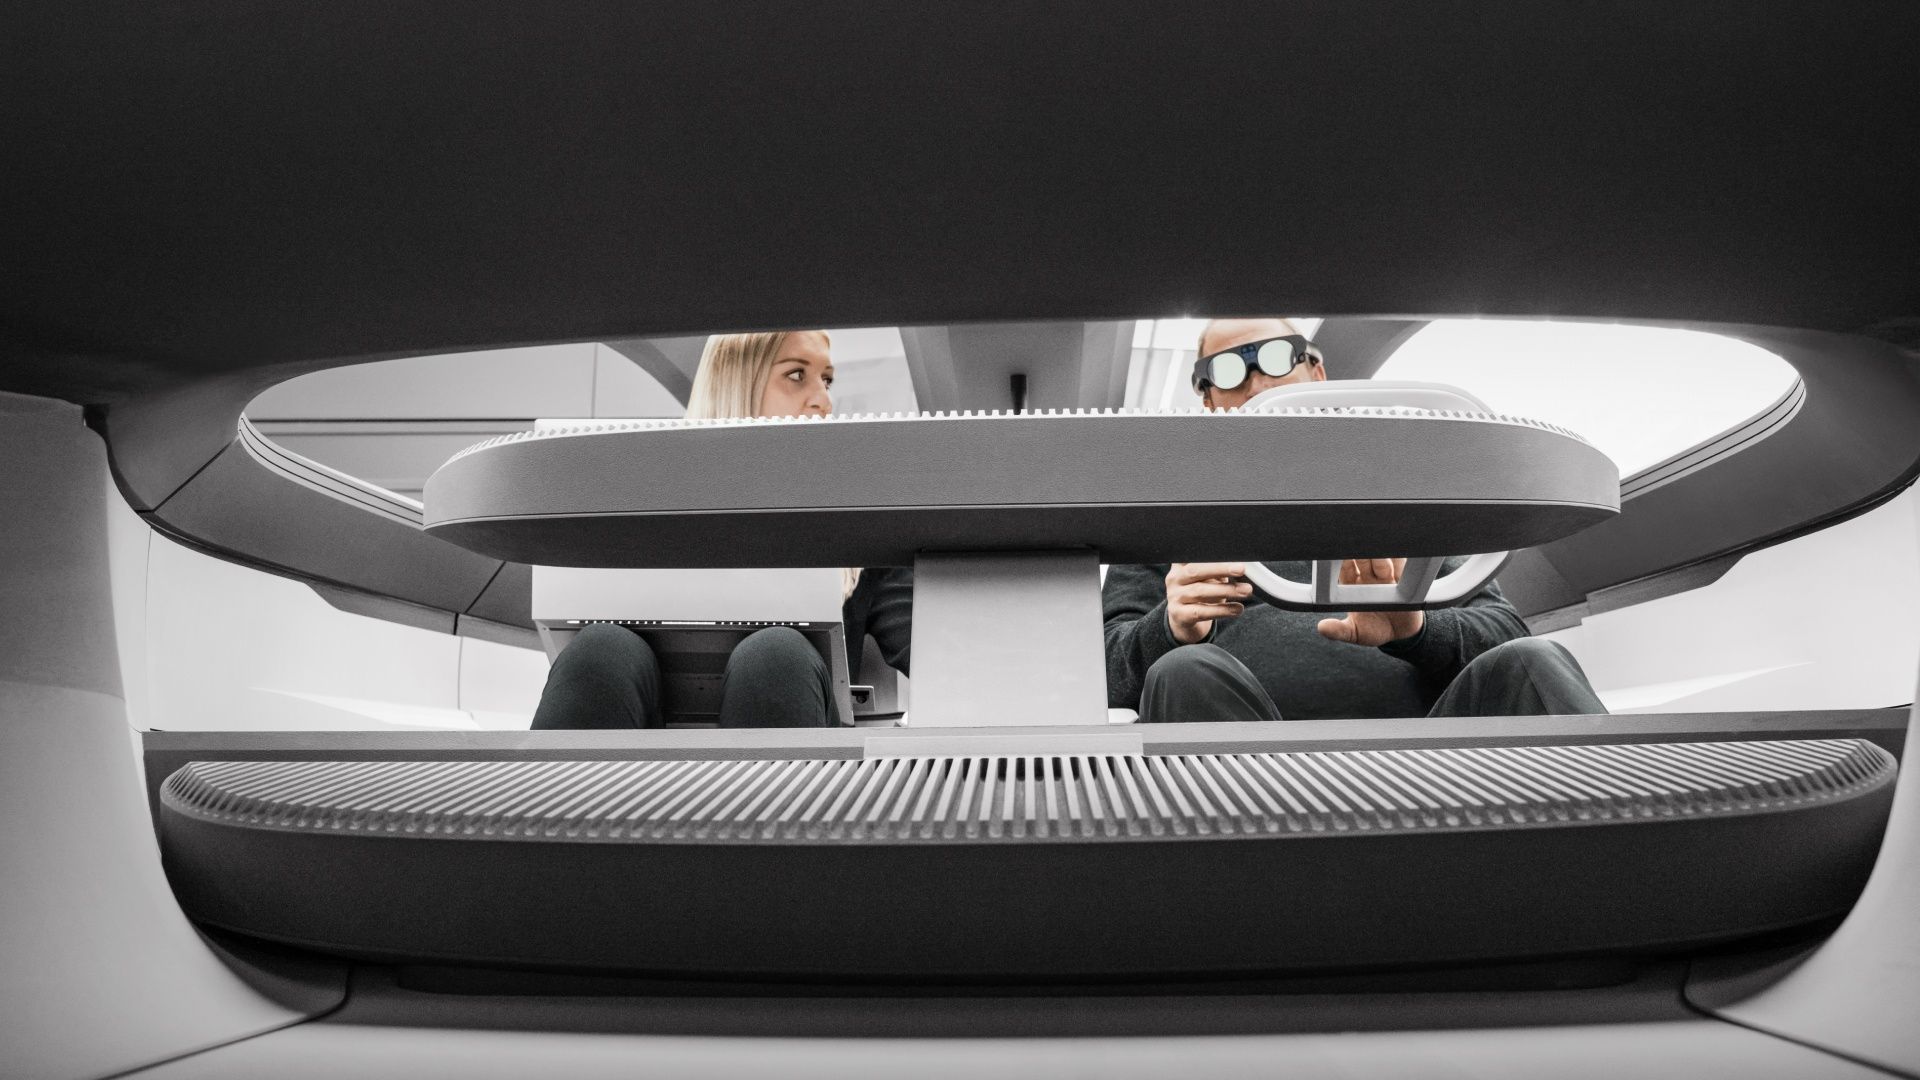 Durchblick in das Cockpit des Audi activesphere concept.